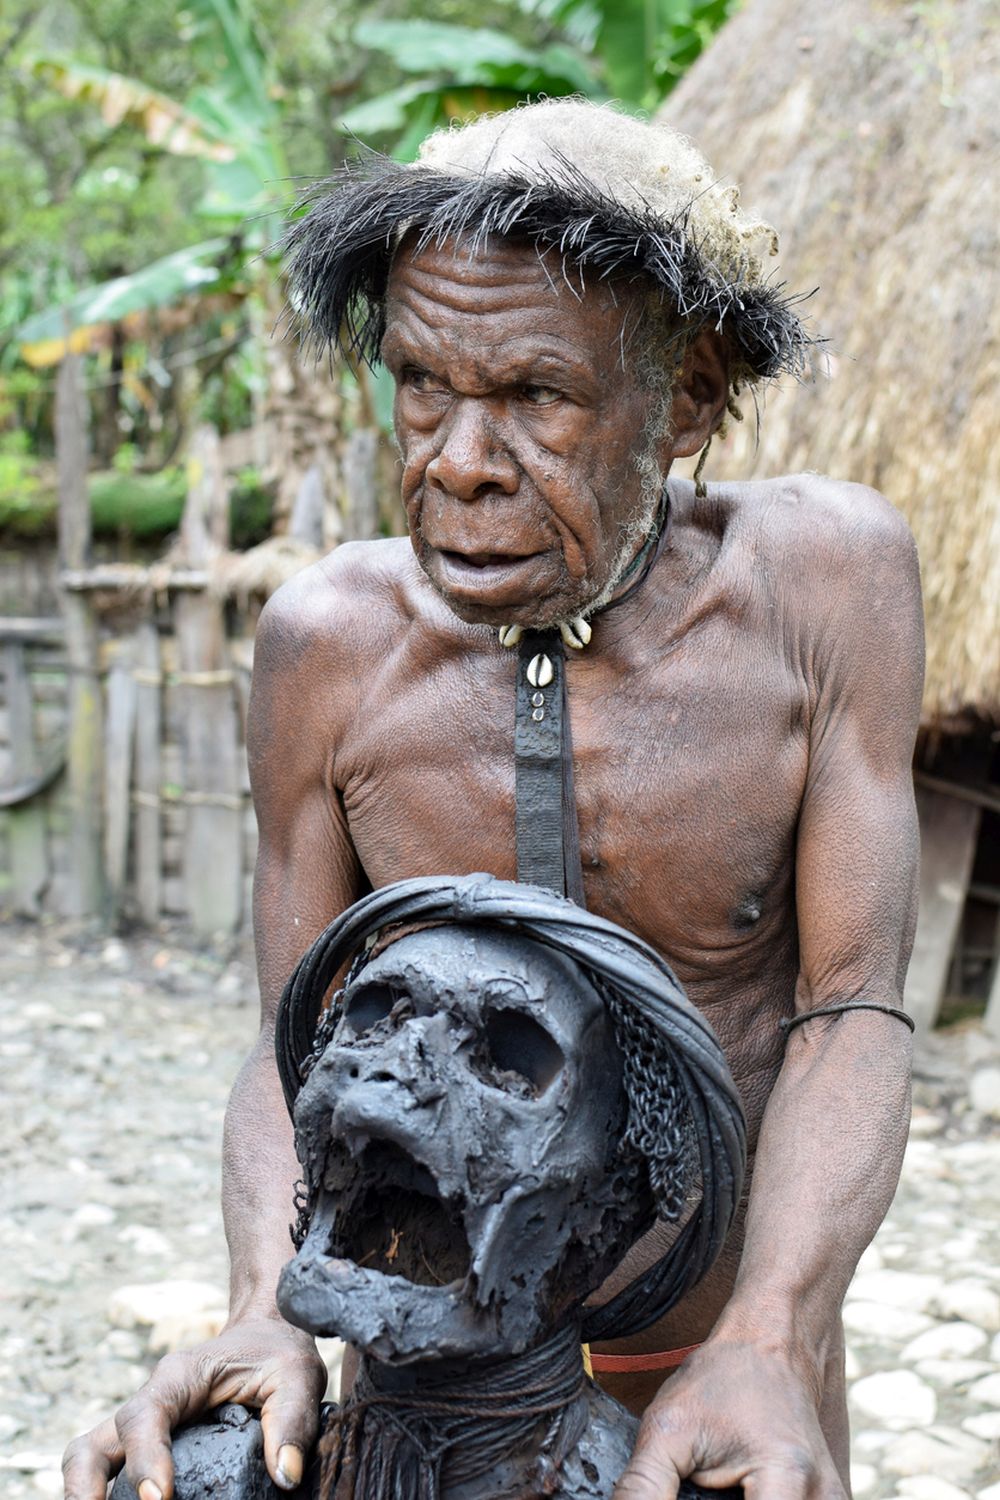 Пушени мумии, Папуа, Нова Гвинея. Племето Анга отдава почит на мъртвите по малко по-различен начин. Представители на племето не погребват роднините си в земята, а мумифицират тела, използвайки техниката на опушване. Те създават гробни места близо до селата и по-късно често ги посещават. За племето Анга този метод е форма на показване на уважение към починалите.